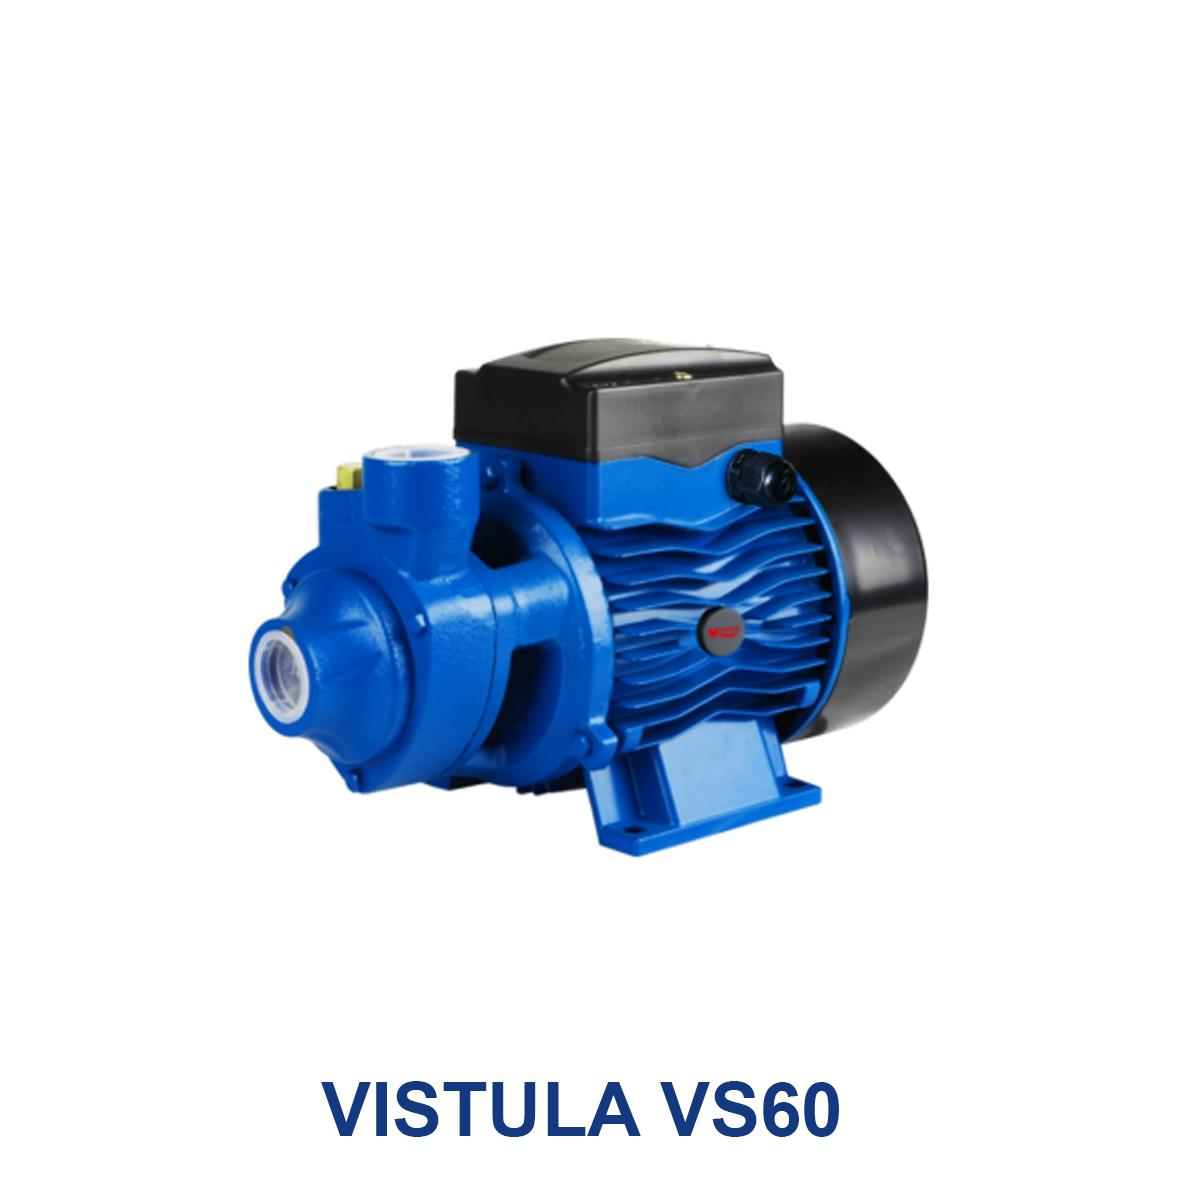 VISTULA-VS60